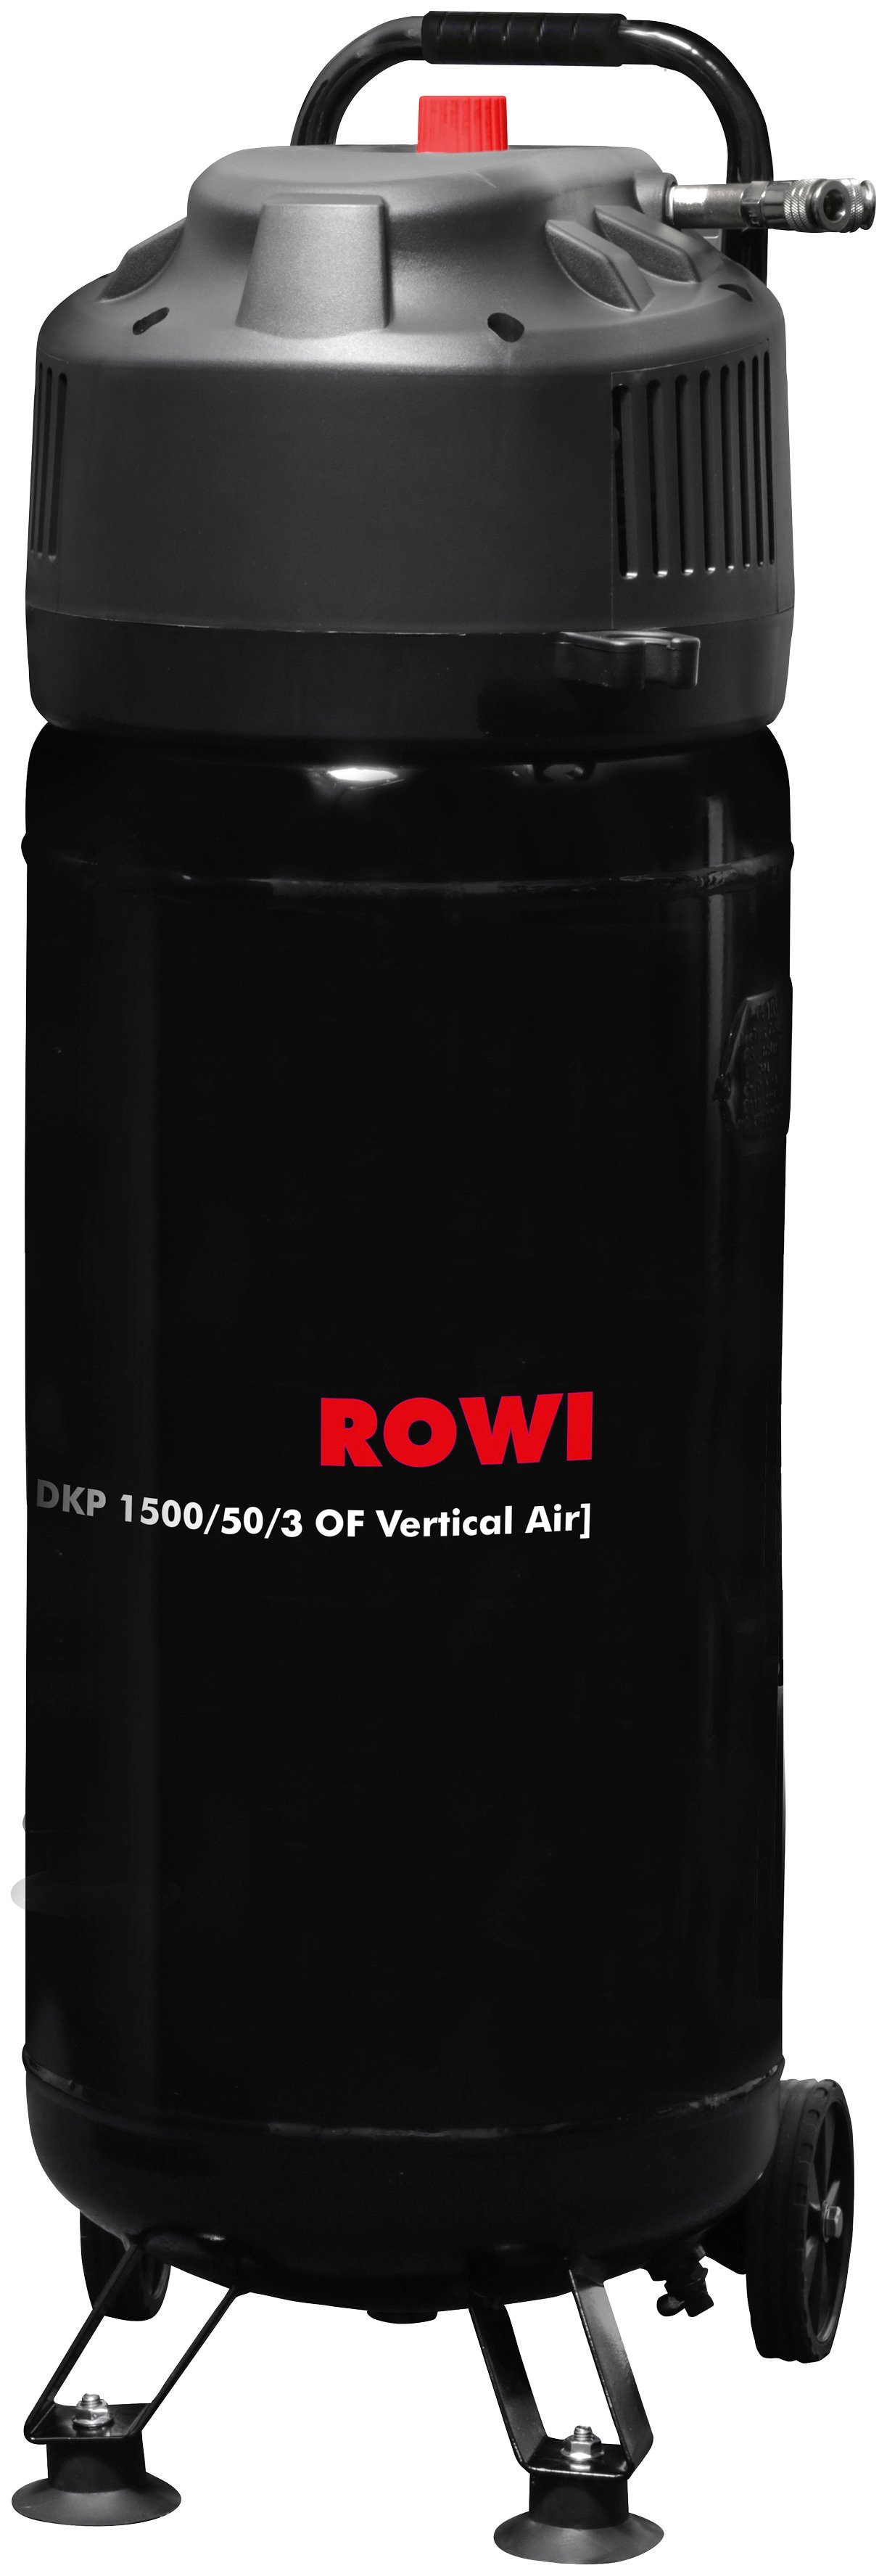 ROWI Kompressor max. 50 OF 10 DKP 1500/50/3 Air, W, bar, l Vertical 1500